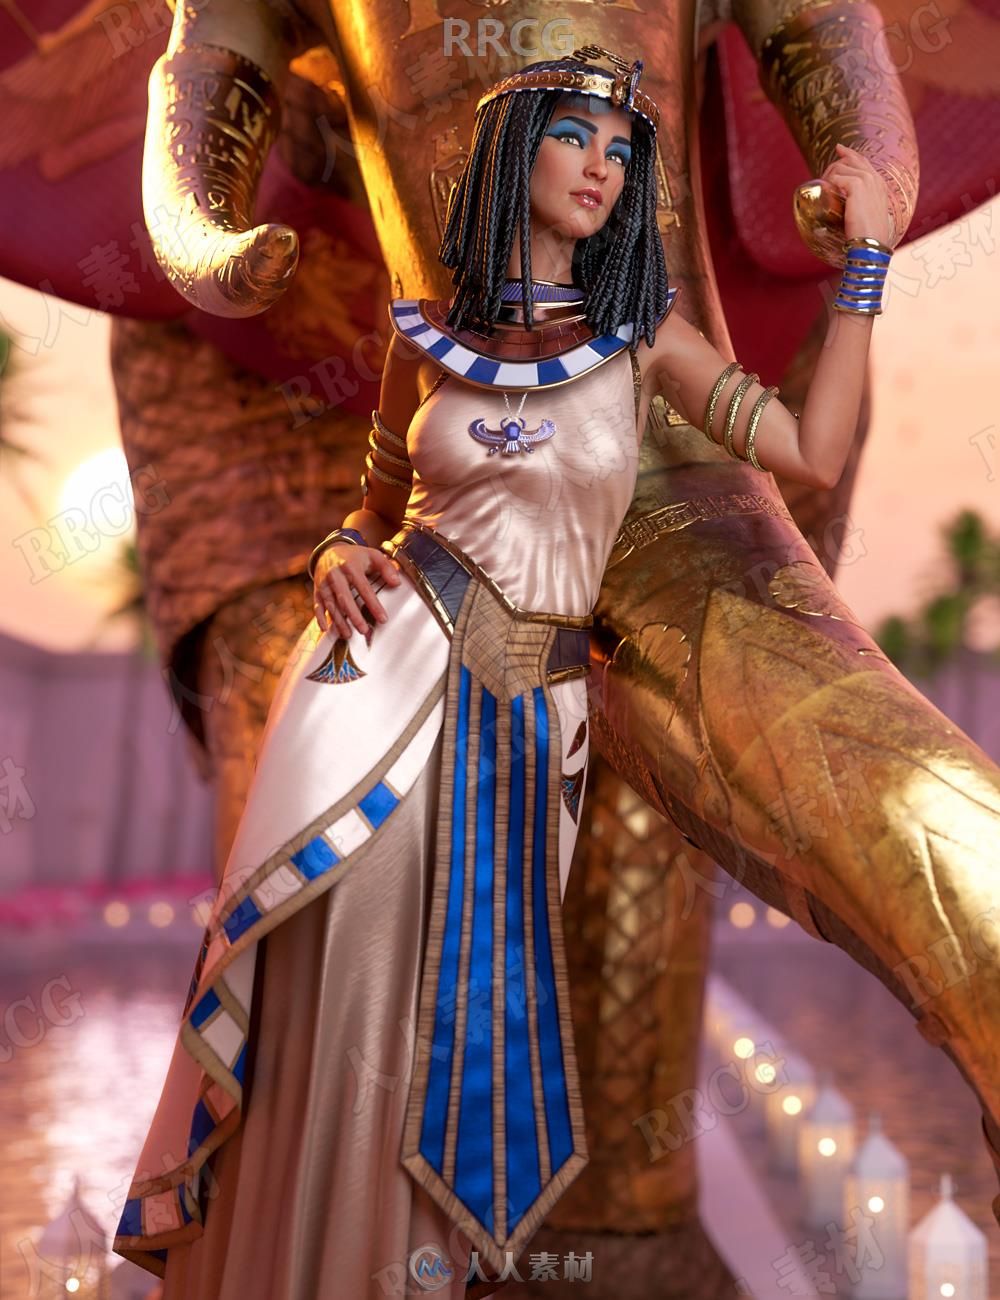 埃及艳后女王角色服饰发型场景相关3d模型合集